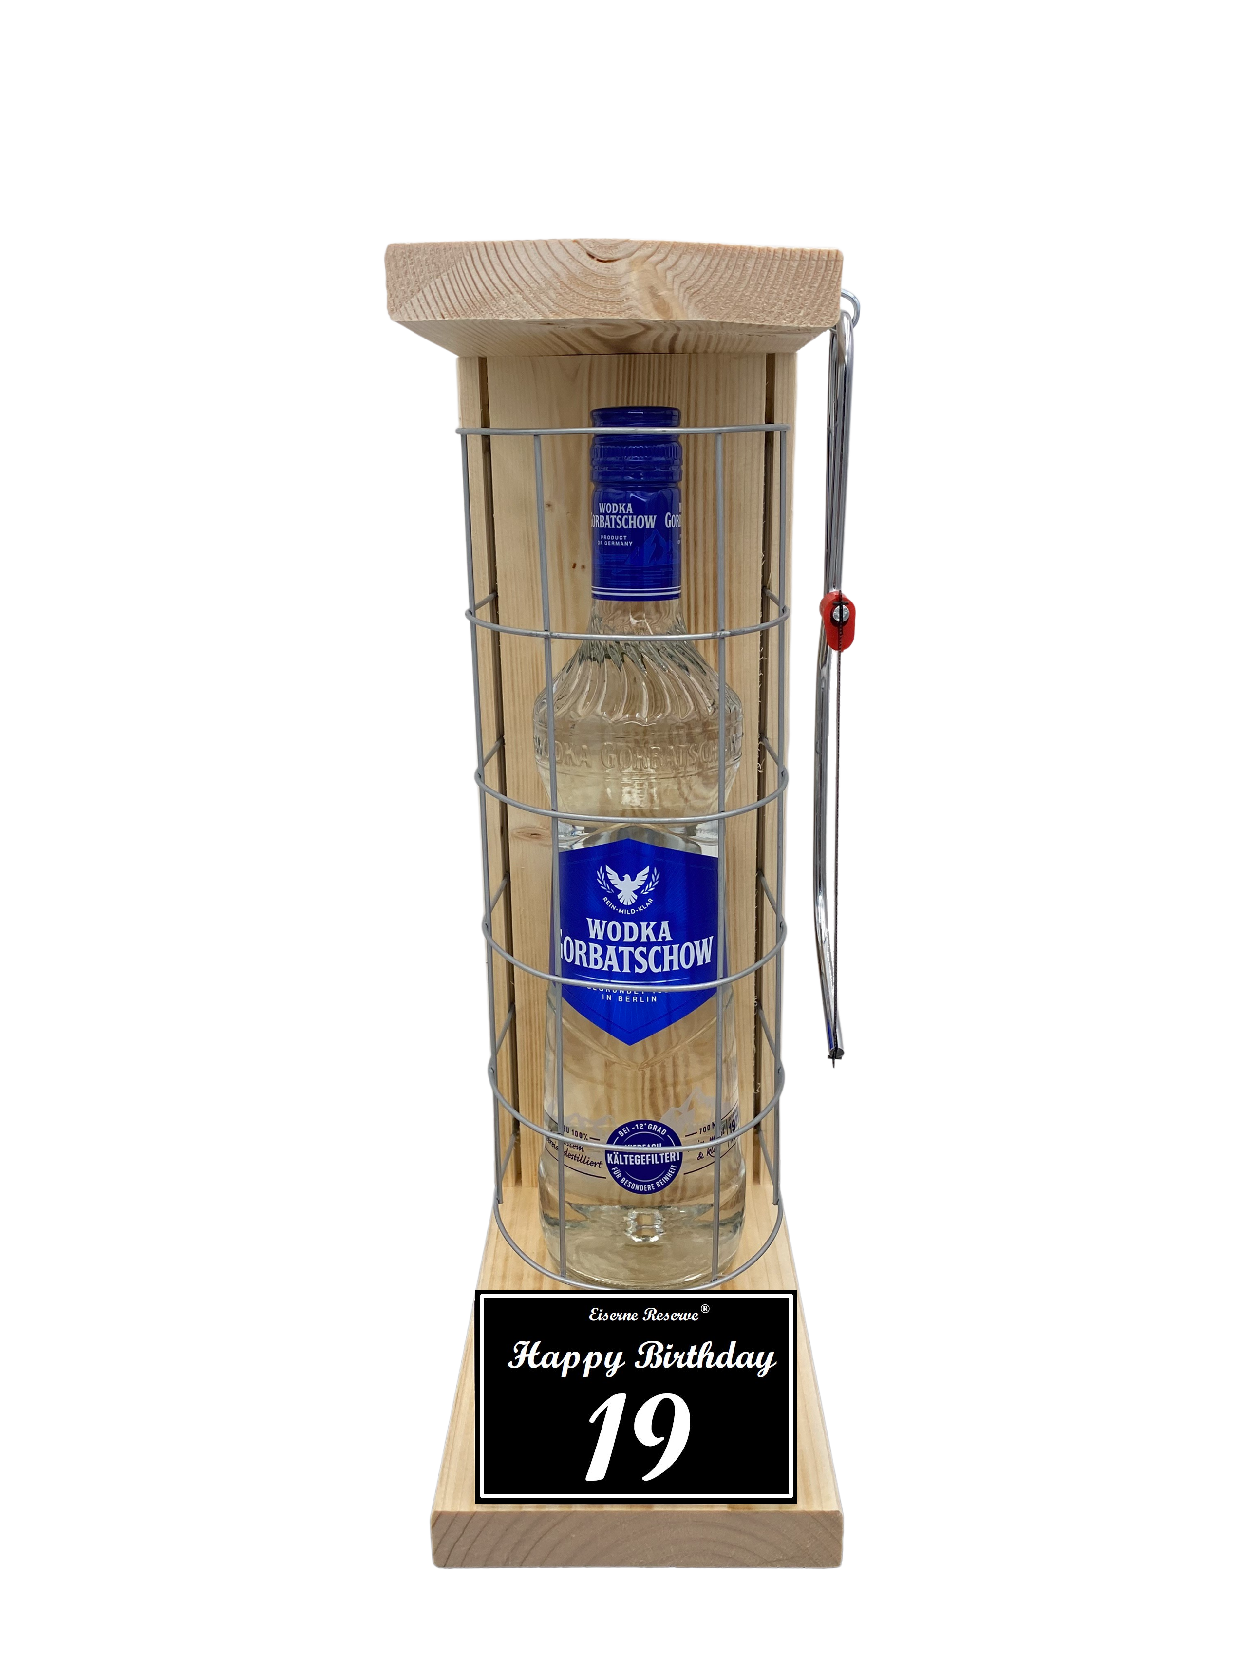 Wodka Geschenk zum 19 Geburtstag - Eiserne Reserve Gitterkäfig